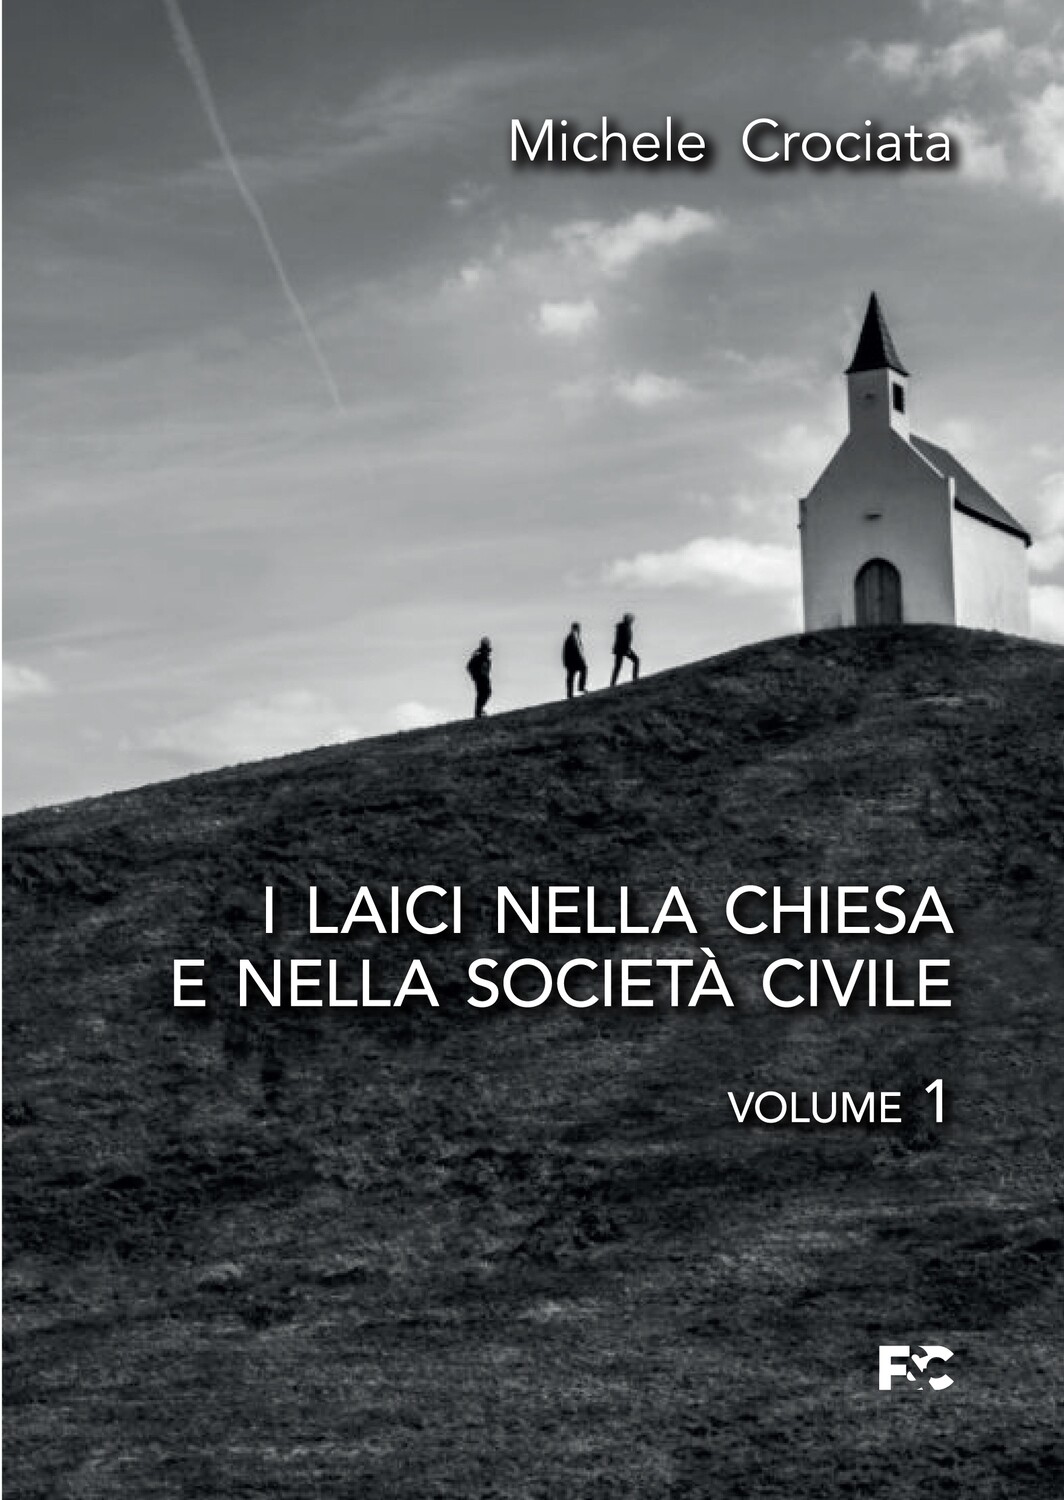 I laici nella Chiesa e nella società civile - 2 volumi indivisibili